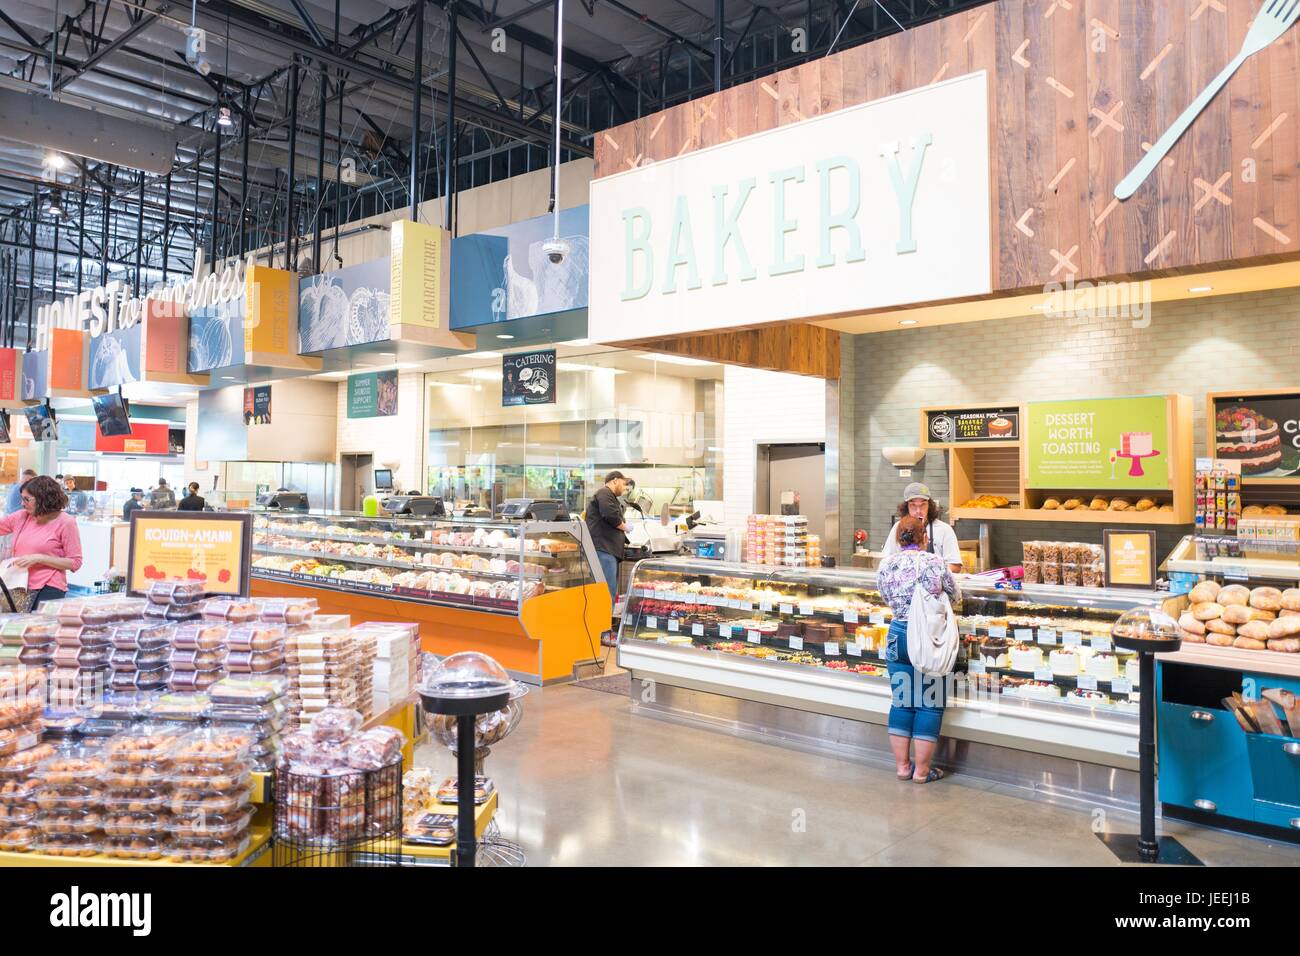 Los compradores visitan la sección de panificación en el supermercado Whole Foods Market en Dublin, California, 16 de junio de 2017. Foto de stock